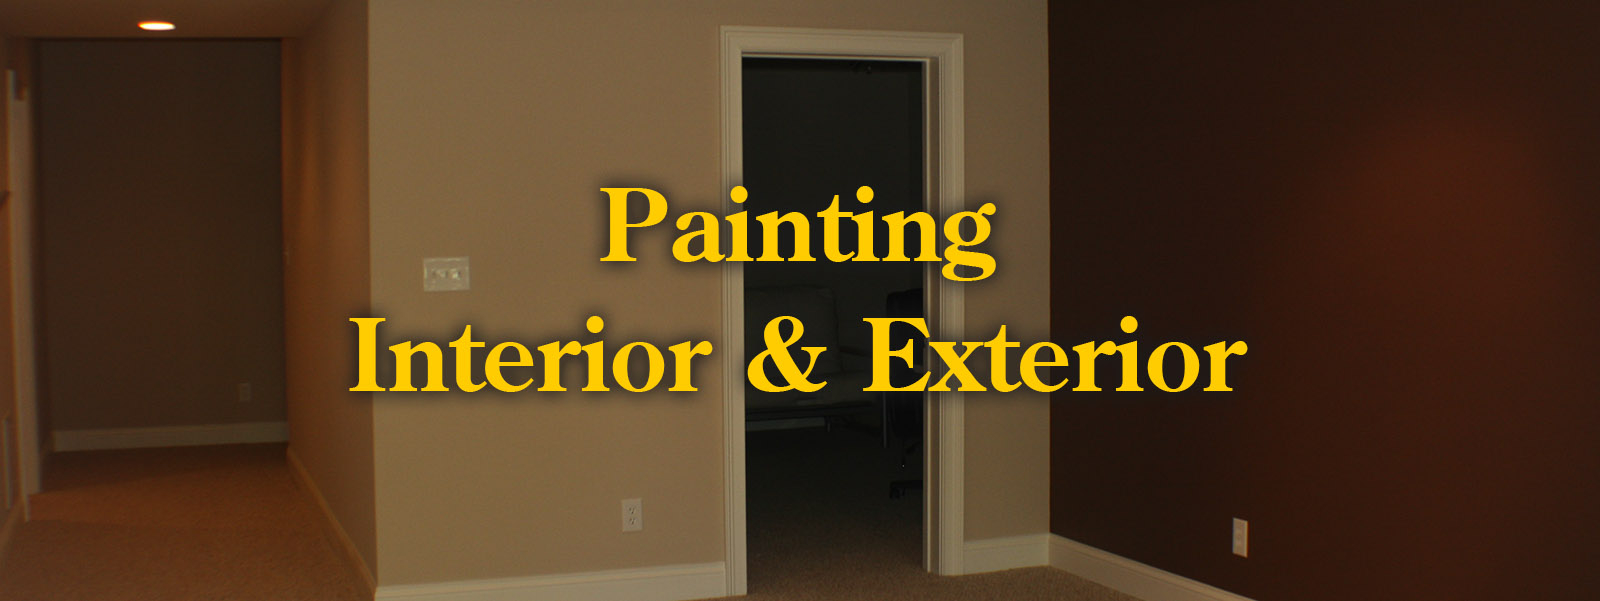 painting - interior and exterior trim